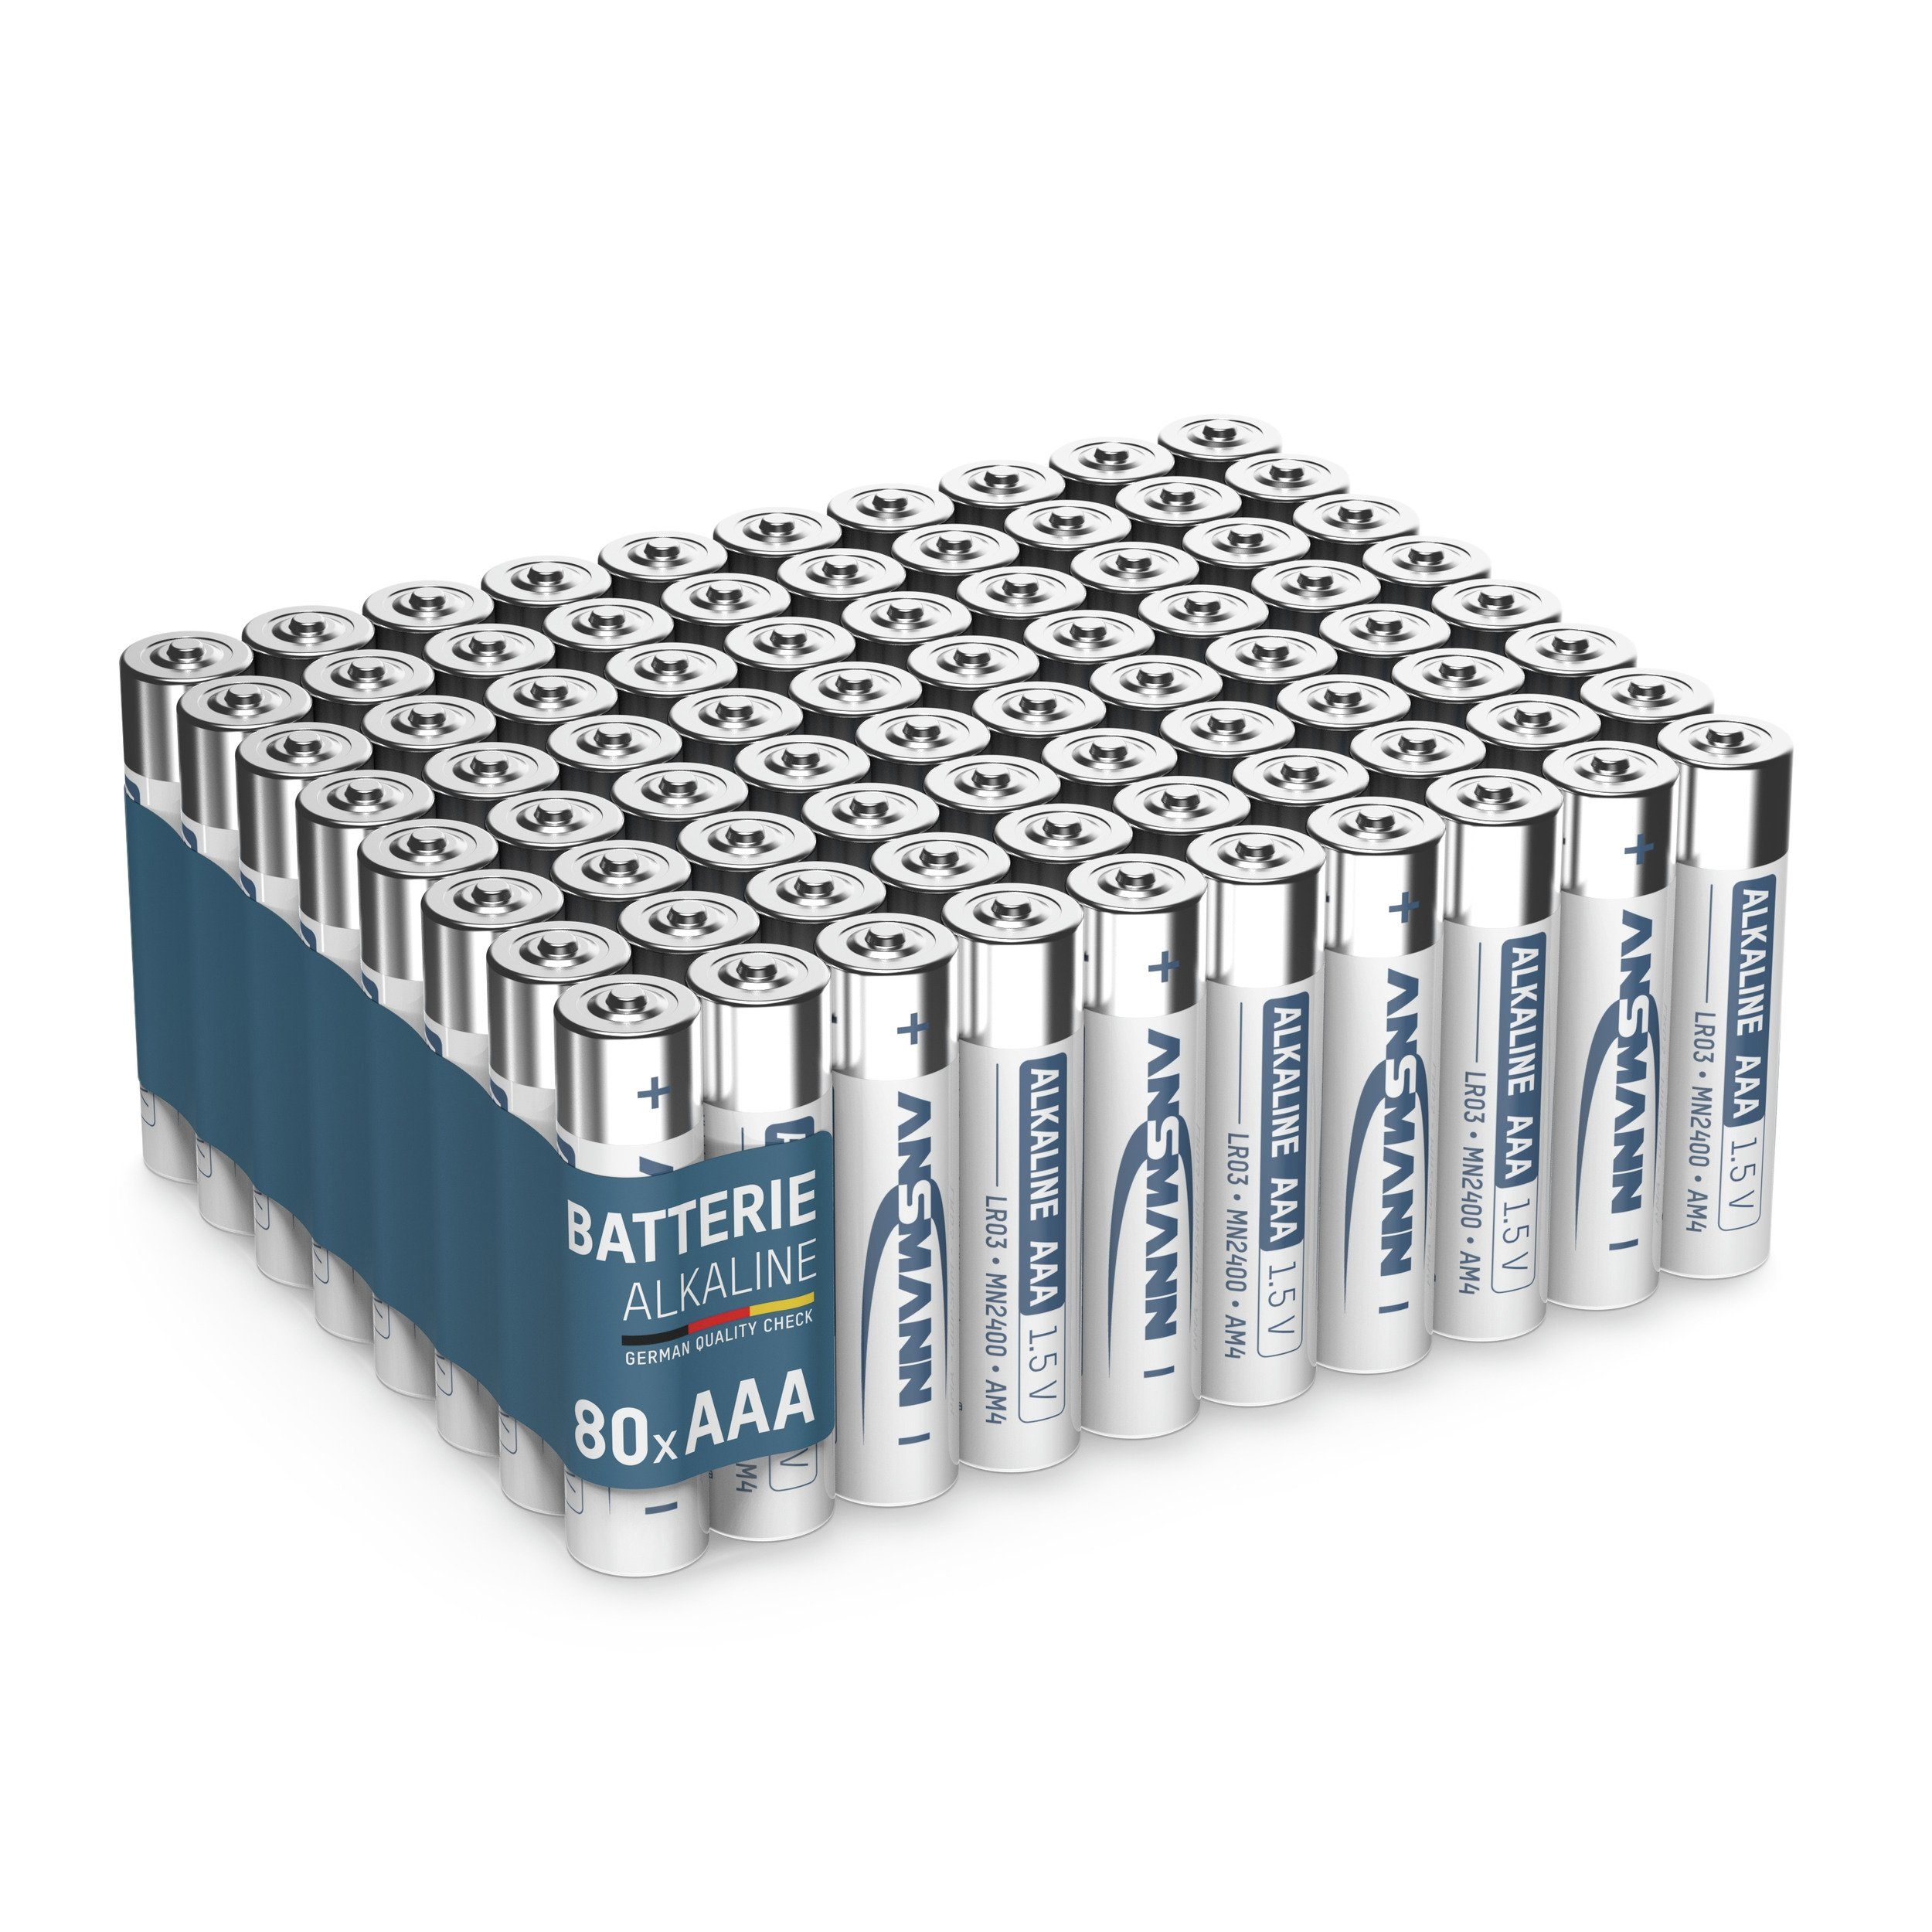 Micro Batterien Alkaline für Lichterkette - ANSMANN® 80 Batterie uvm. AAA Stück Batterie